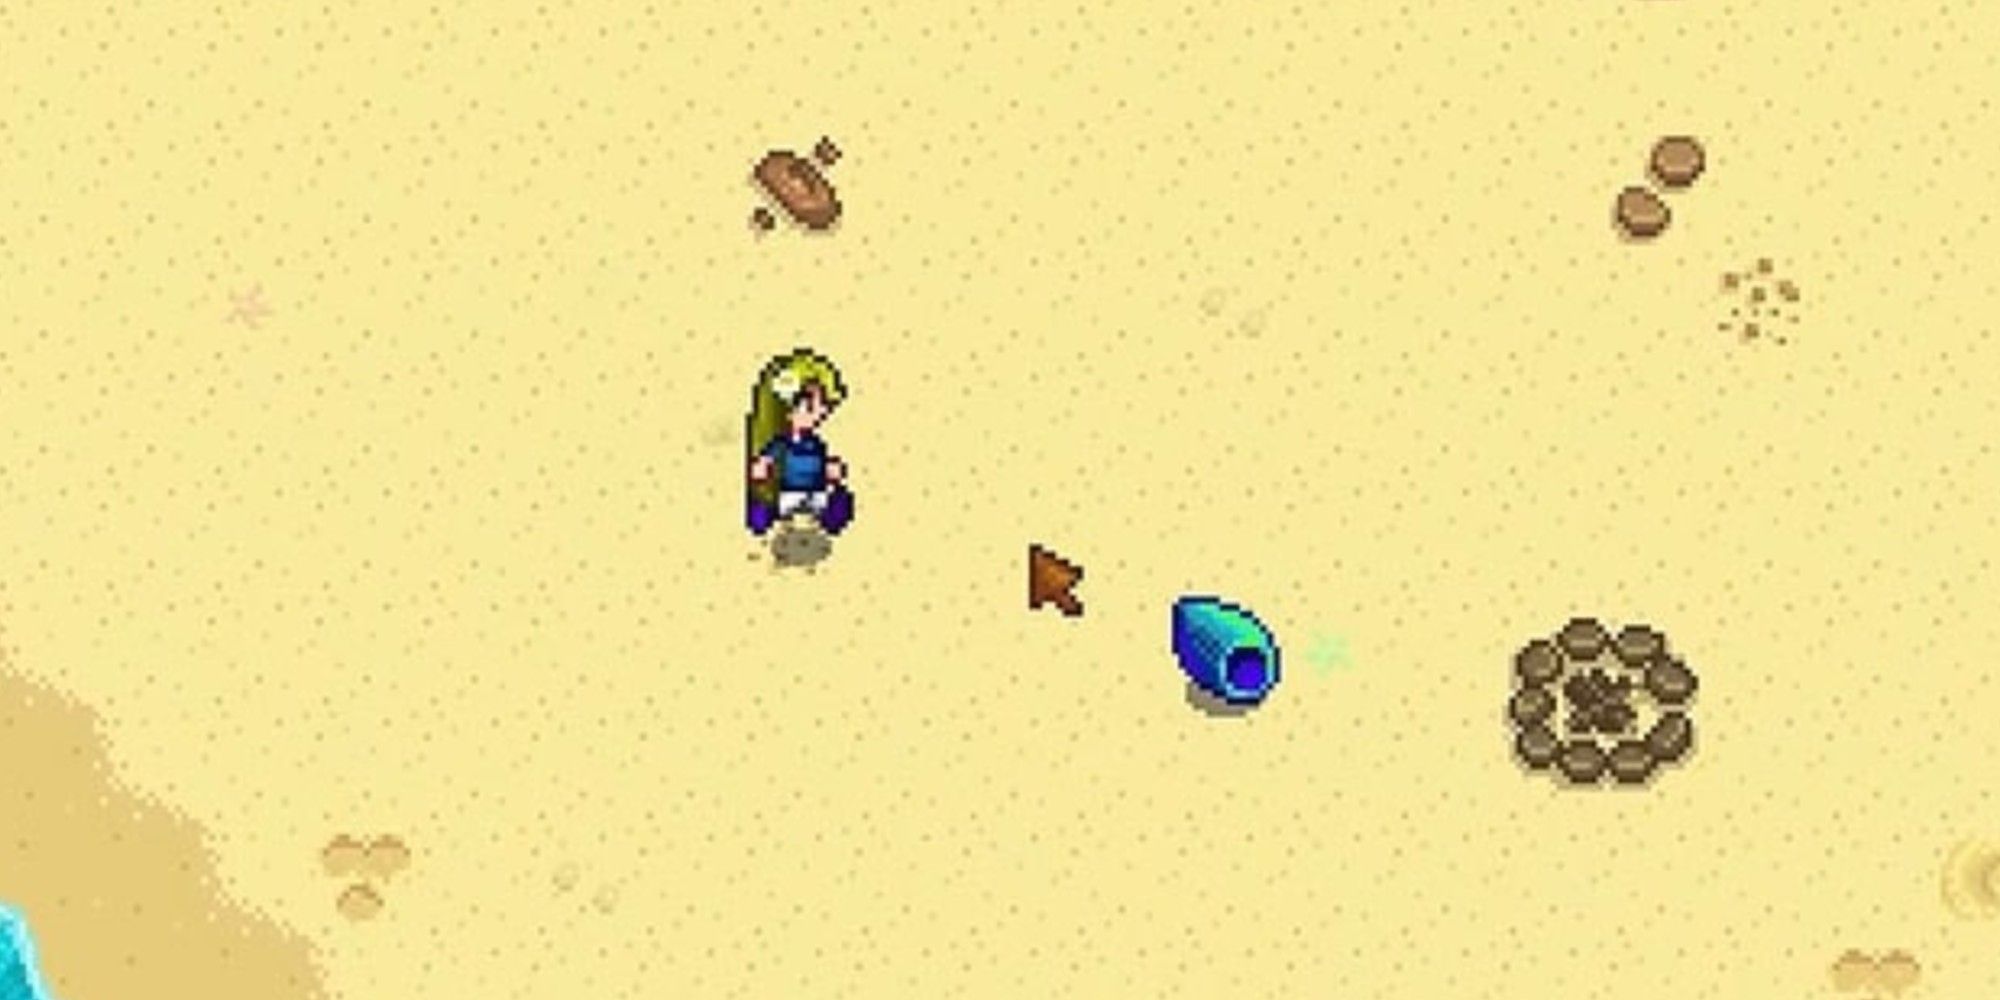 해변으로 가는 플레이어가 무지개 조개에 다가가고 있는 모습